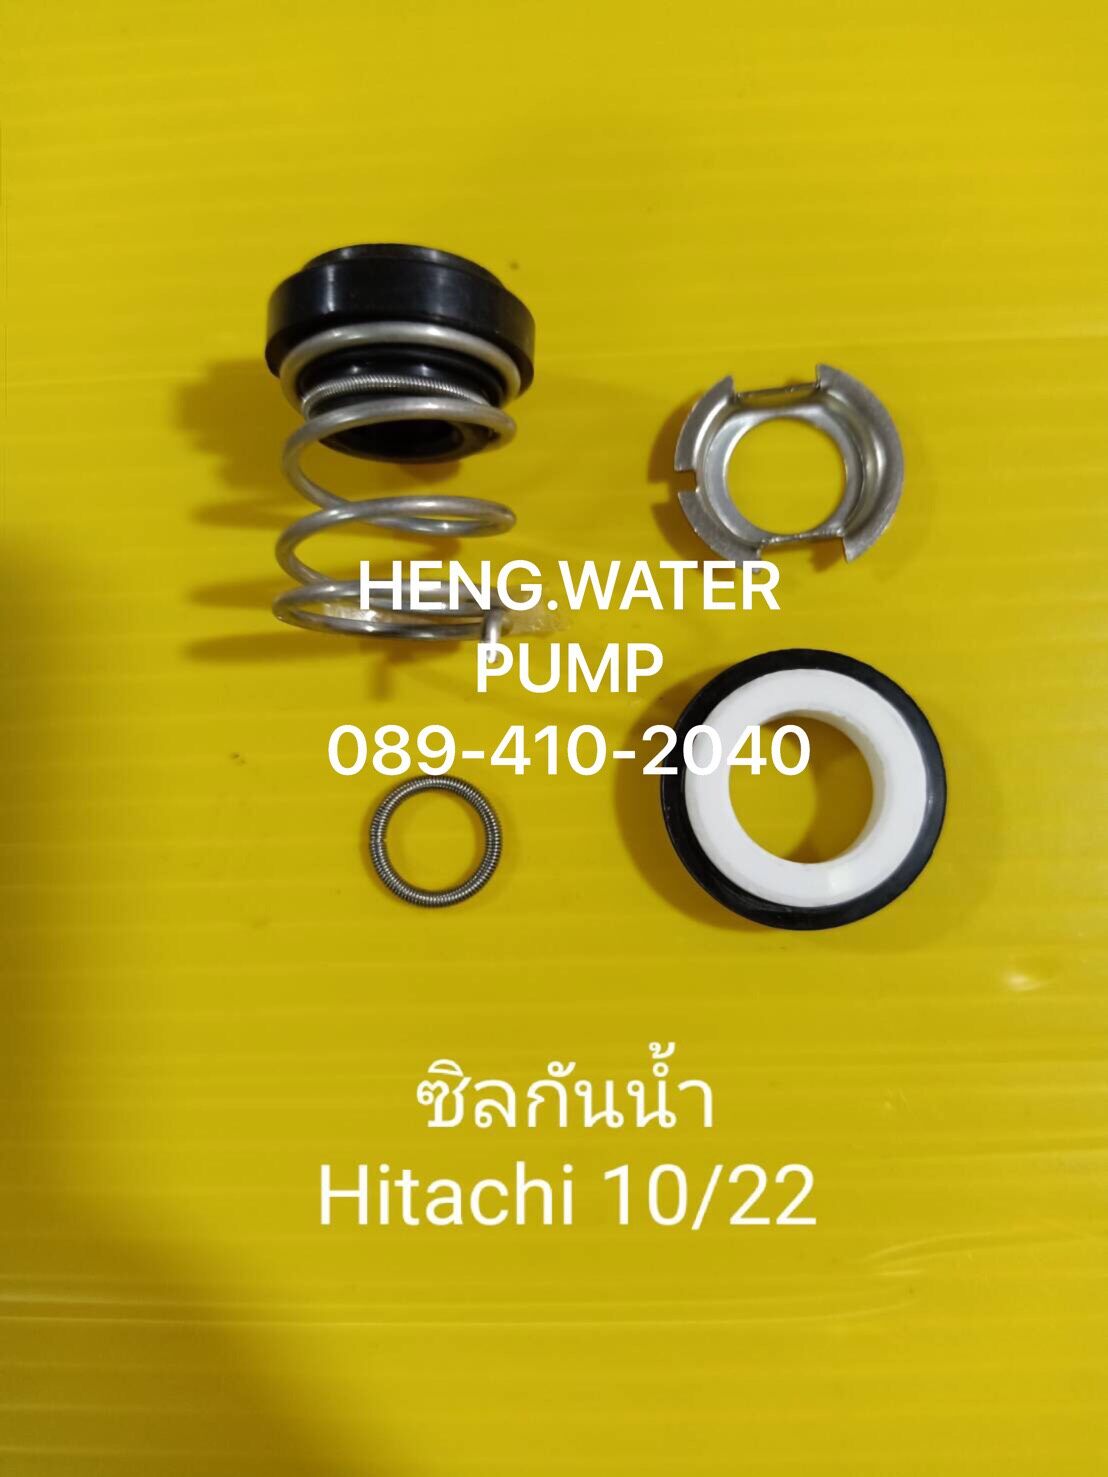 แมคคานิคอลซีล ซีลกันน้ำ ฮิตาชิ 10/22 Hitachi อะไหล่ ปั้มน้ำ ปั๊มน้ำ water pump อุปกรณ์เสริม อะไหล่ปั๊มน้ำ อะไหล่ปั้มน้ำ